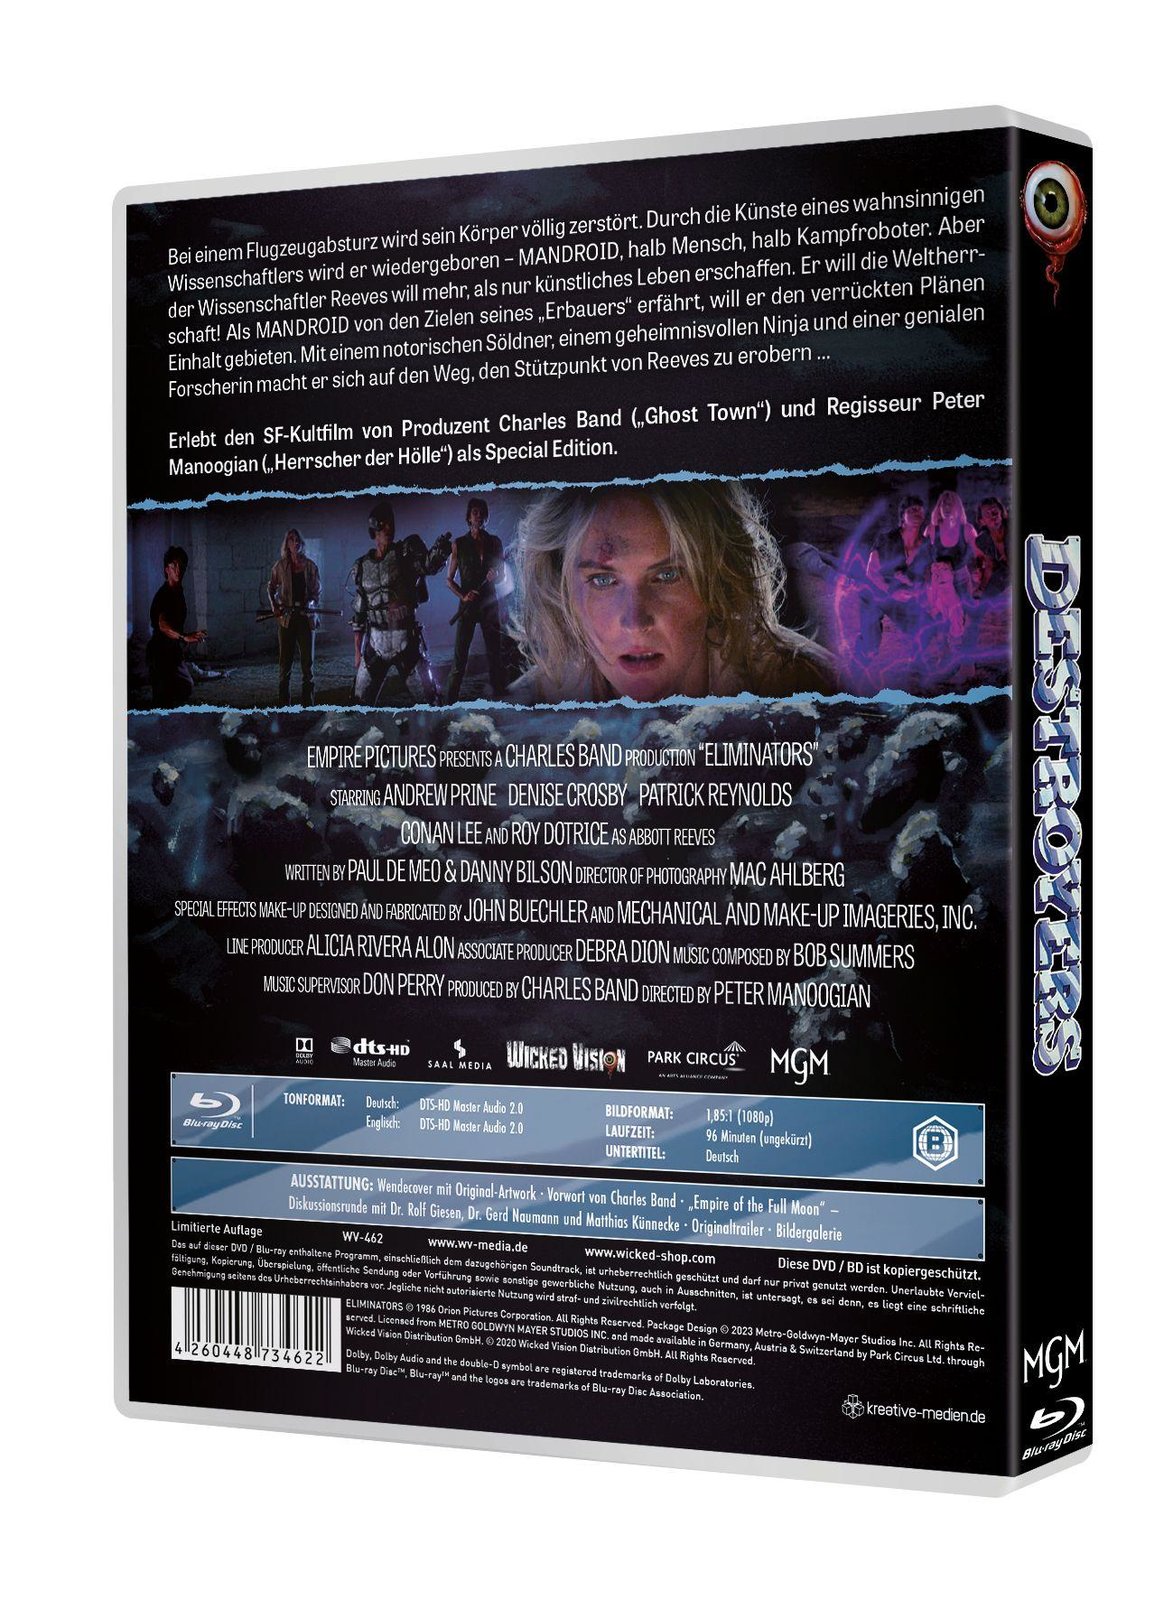 DESTROYERS (Eliminators) - Uncut Edition  (Blu-ray Disc)